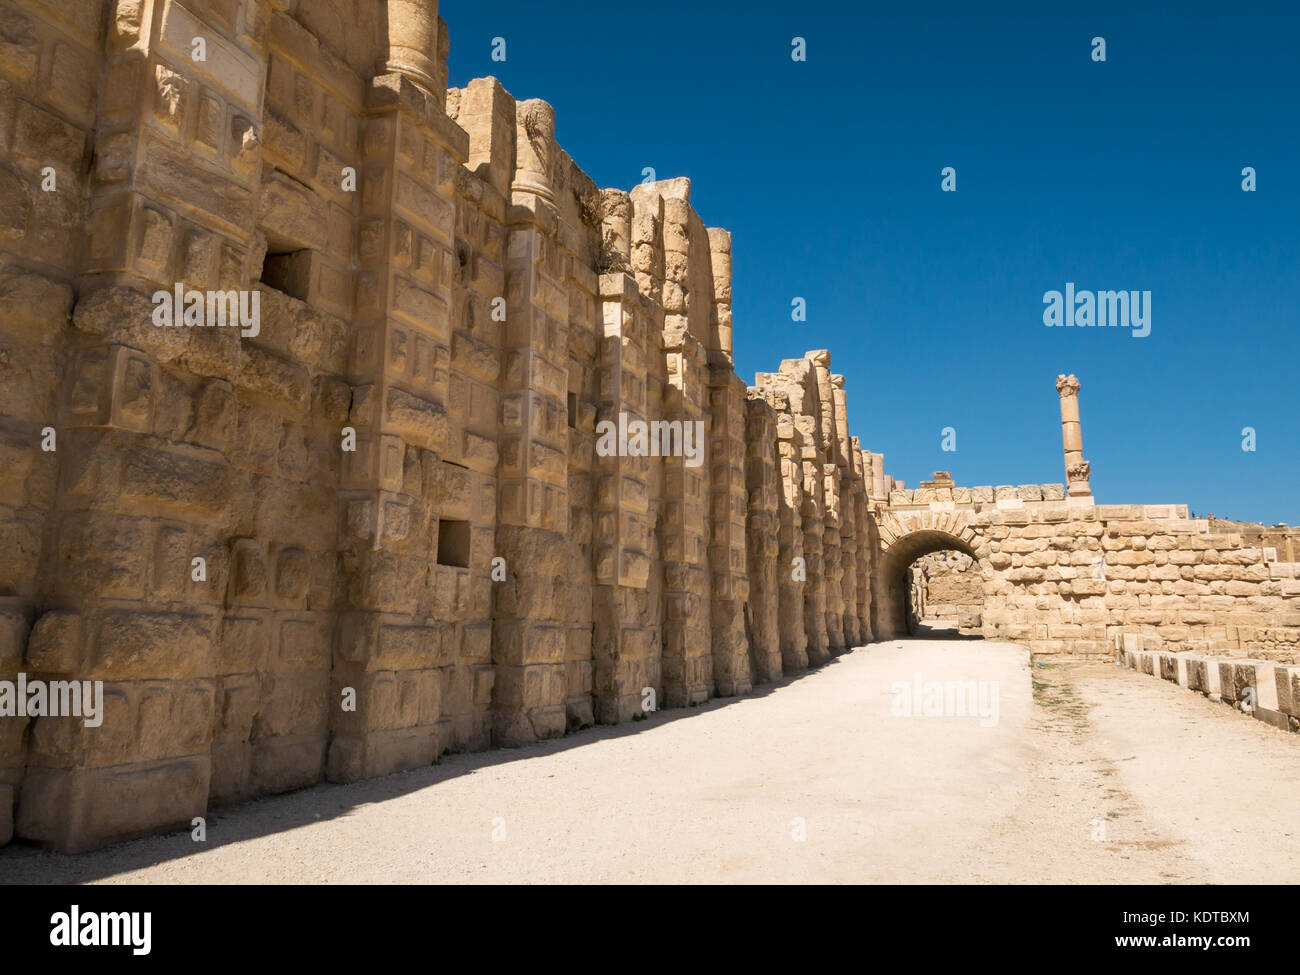 Le mura della città vicino al cancello sud, la città romana di Jerash, antica Gerasa, sito archeologico nel nord della Giordania, Medio Oriente Foto Stock